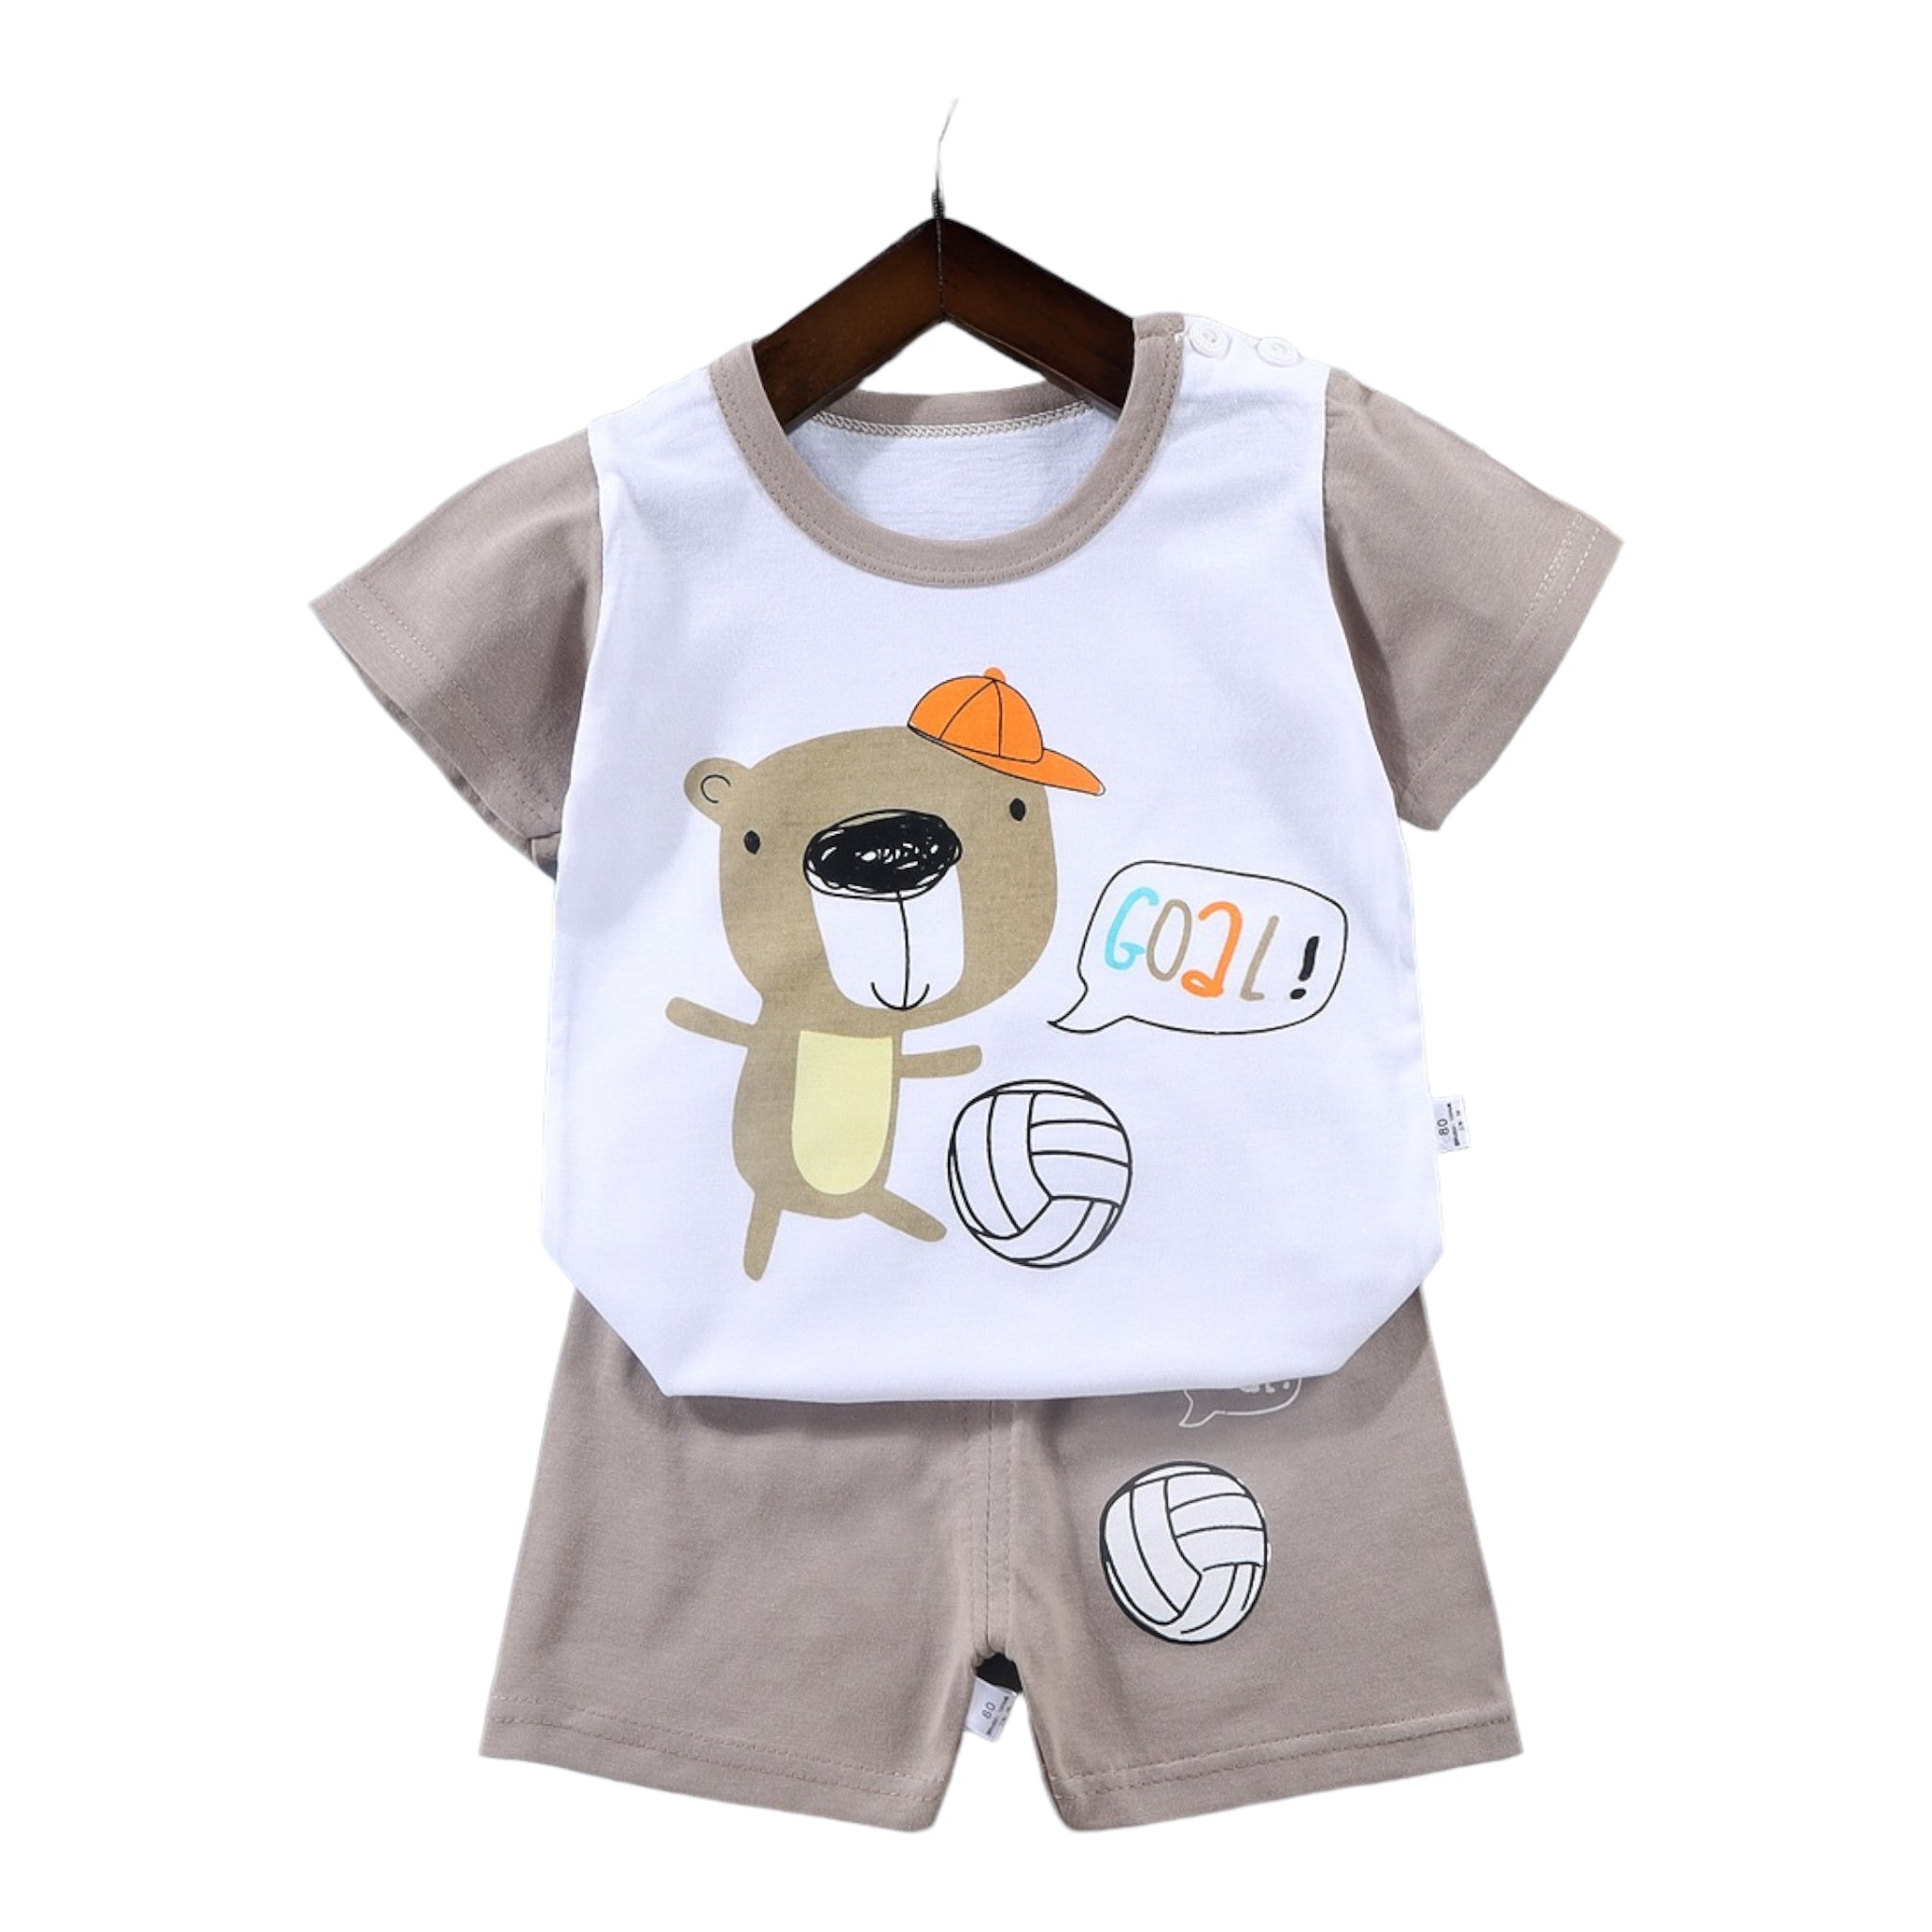 Baby t-Shirt and Shorts Goal - Babyara